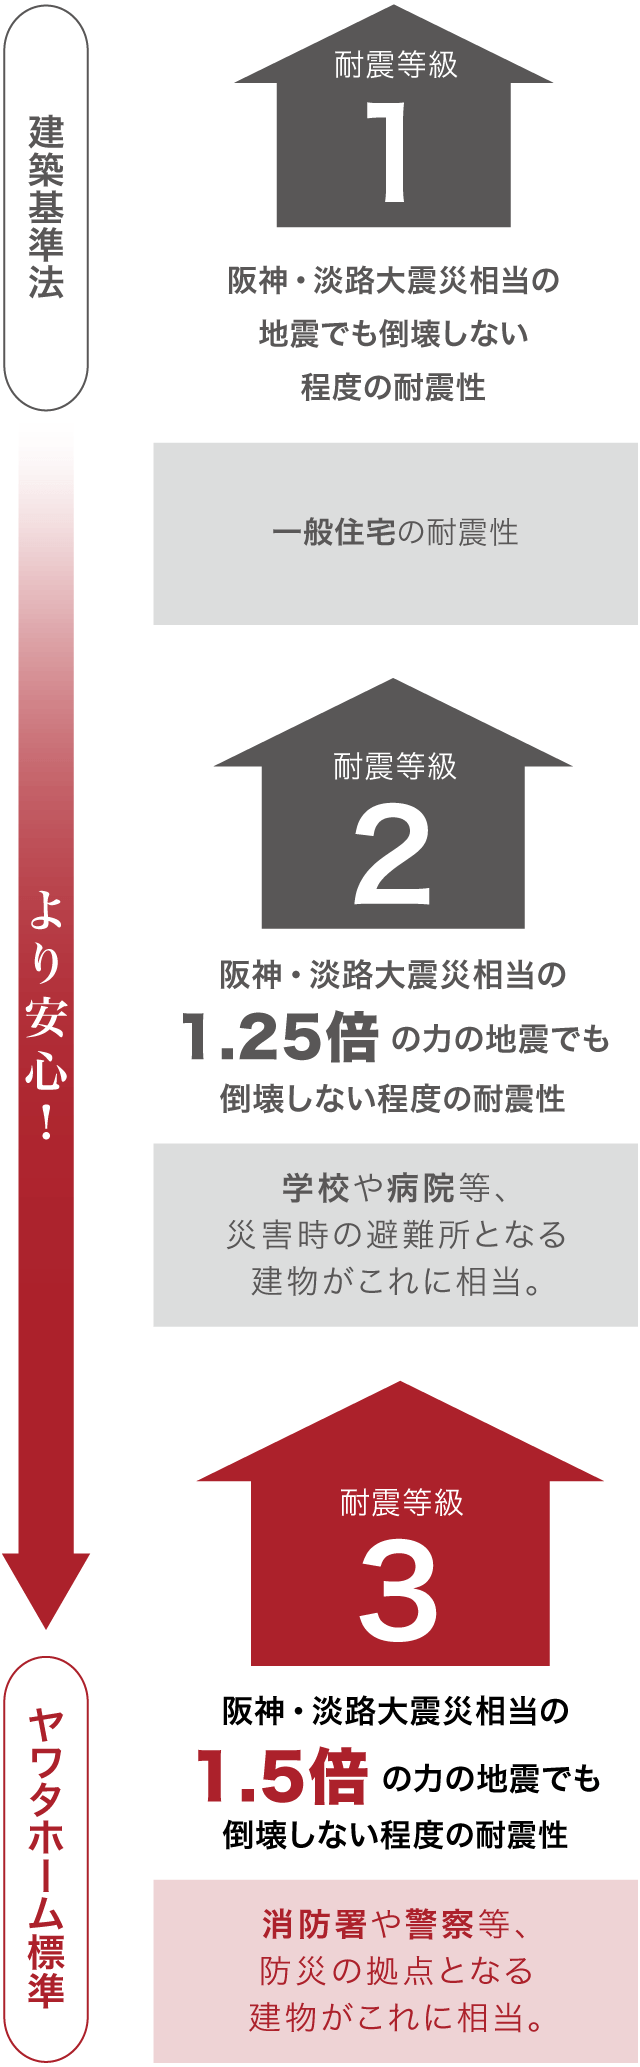 ヤワタホーム標準は耐震等級3。阪神・淡路大震災相当の1.5倍の力の地震でも倒壊しない程度の耐震性。消防署や警察等、防災の拠点となる建物がこれに相当。